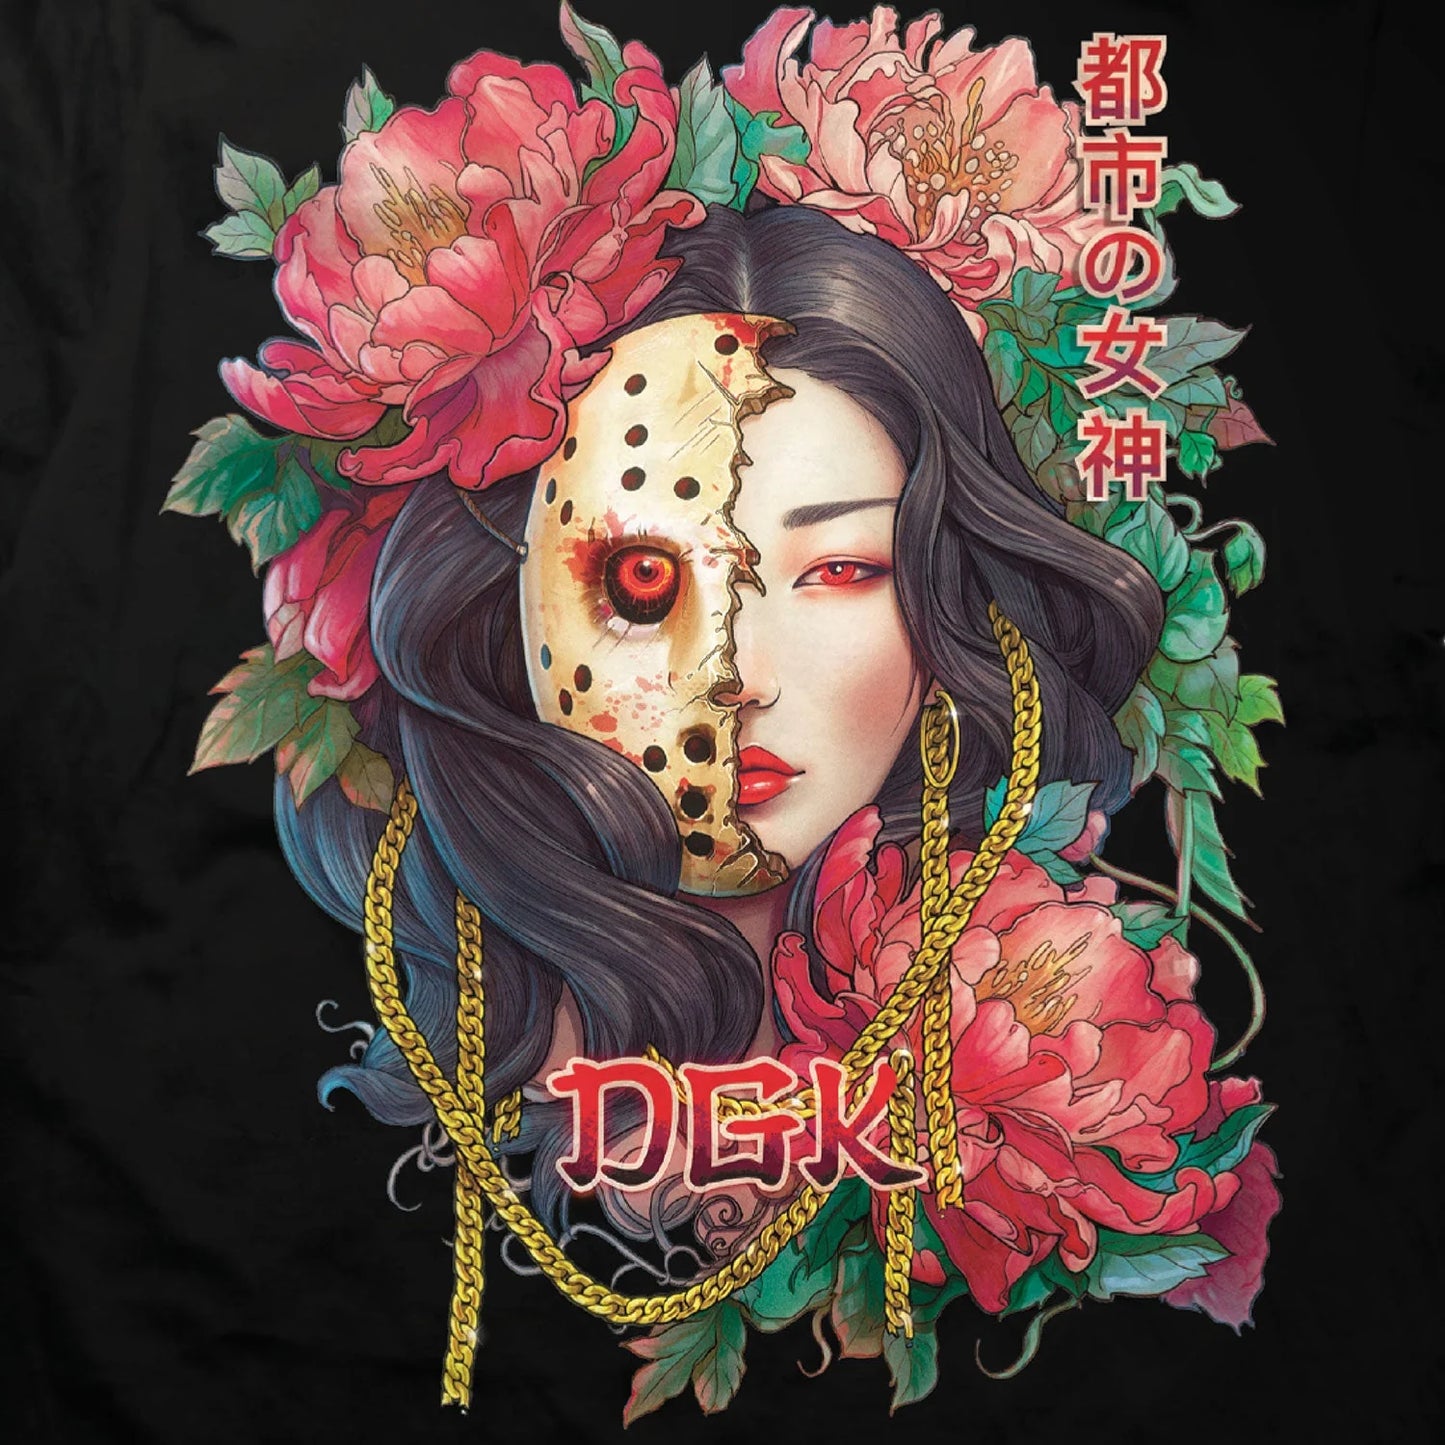 DGK Demon Goddess Graphic T-shirt - Black